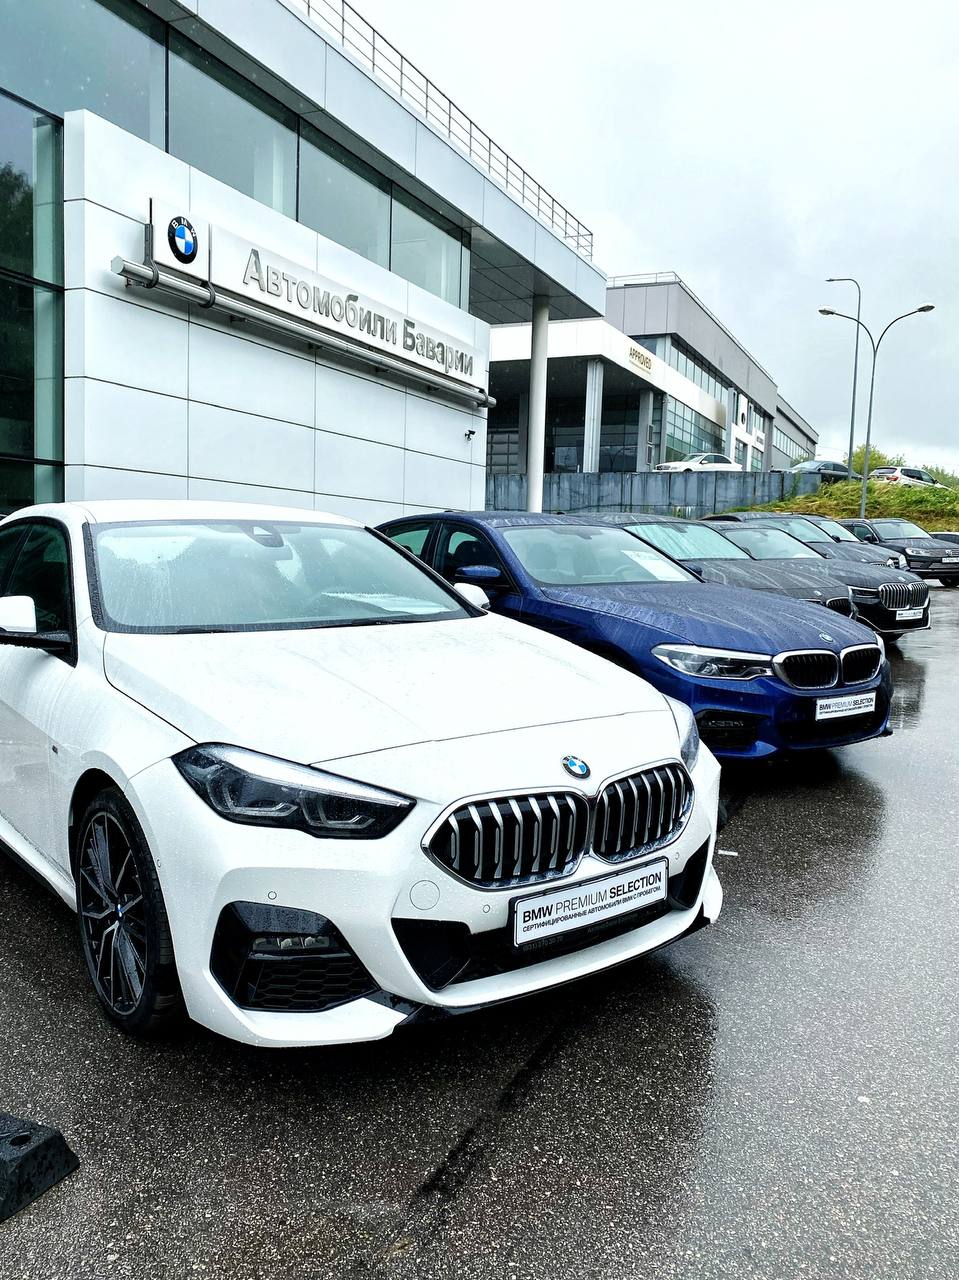 Автомобили Баварии и бренд BMW работает в обычном режиме.